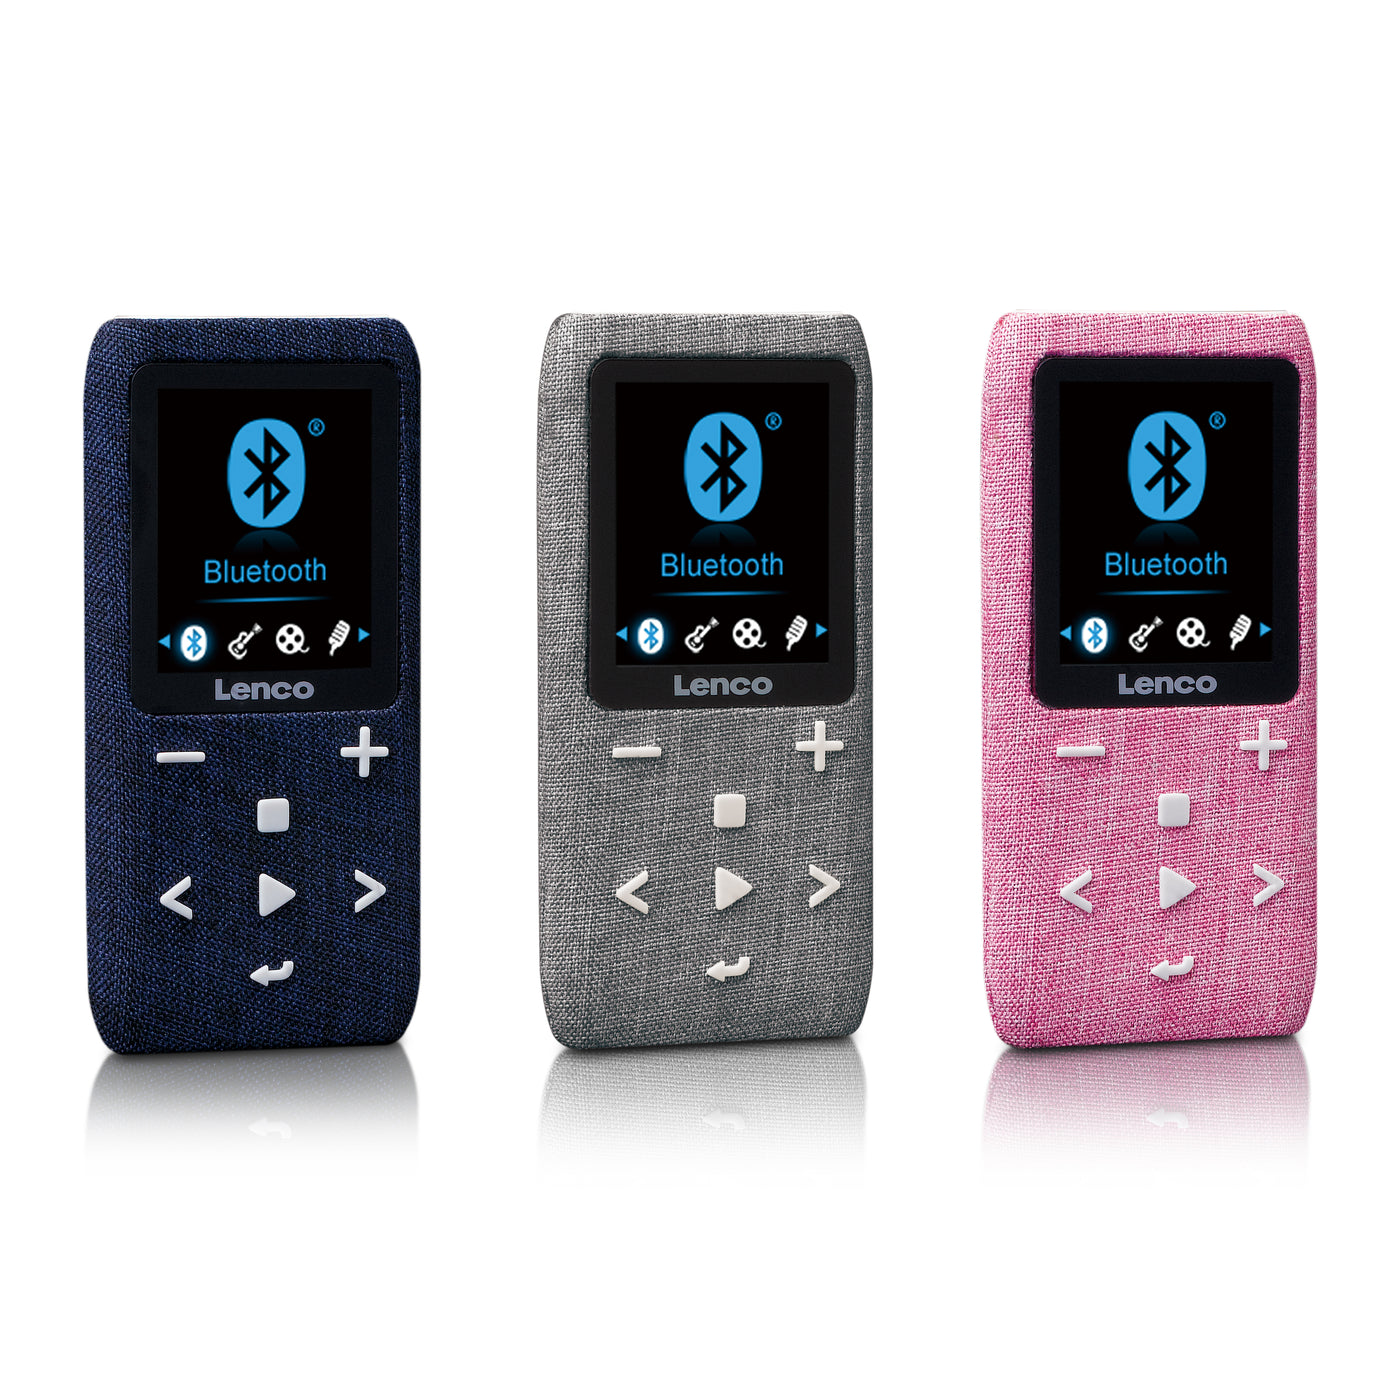 LENCO Xemio-861BU - Odtwarzacz MP3/MP4 z kartą Micro SD 8 GB Bluetooth® - Niebieski